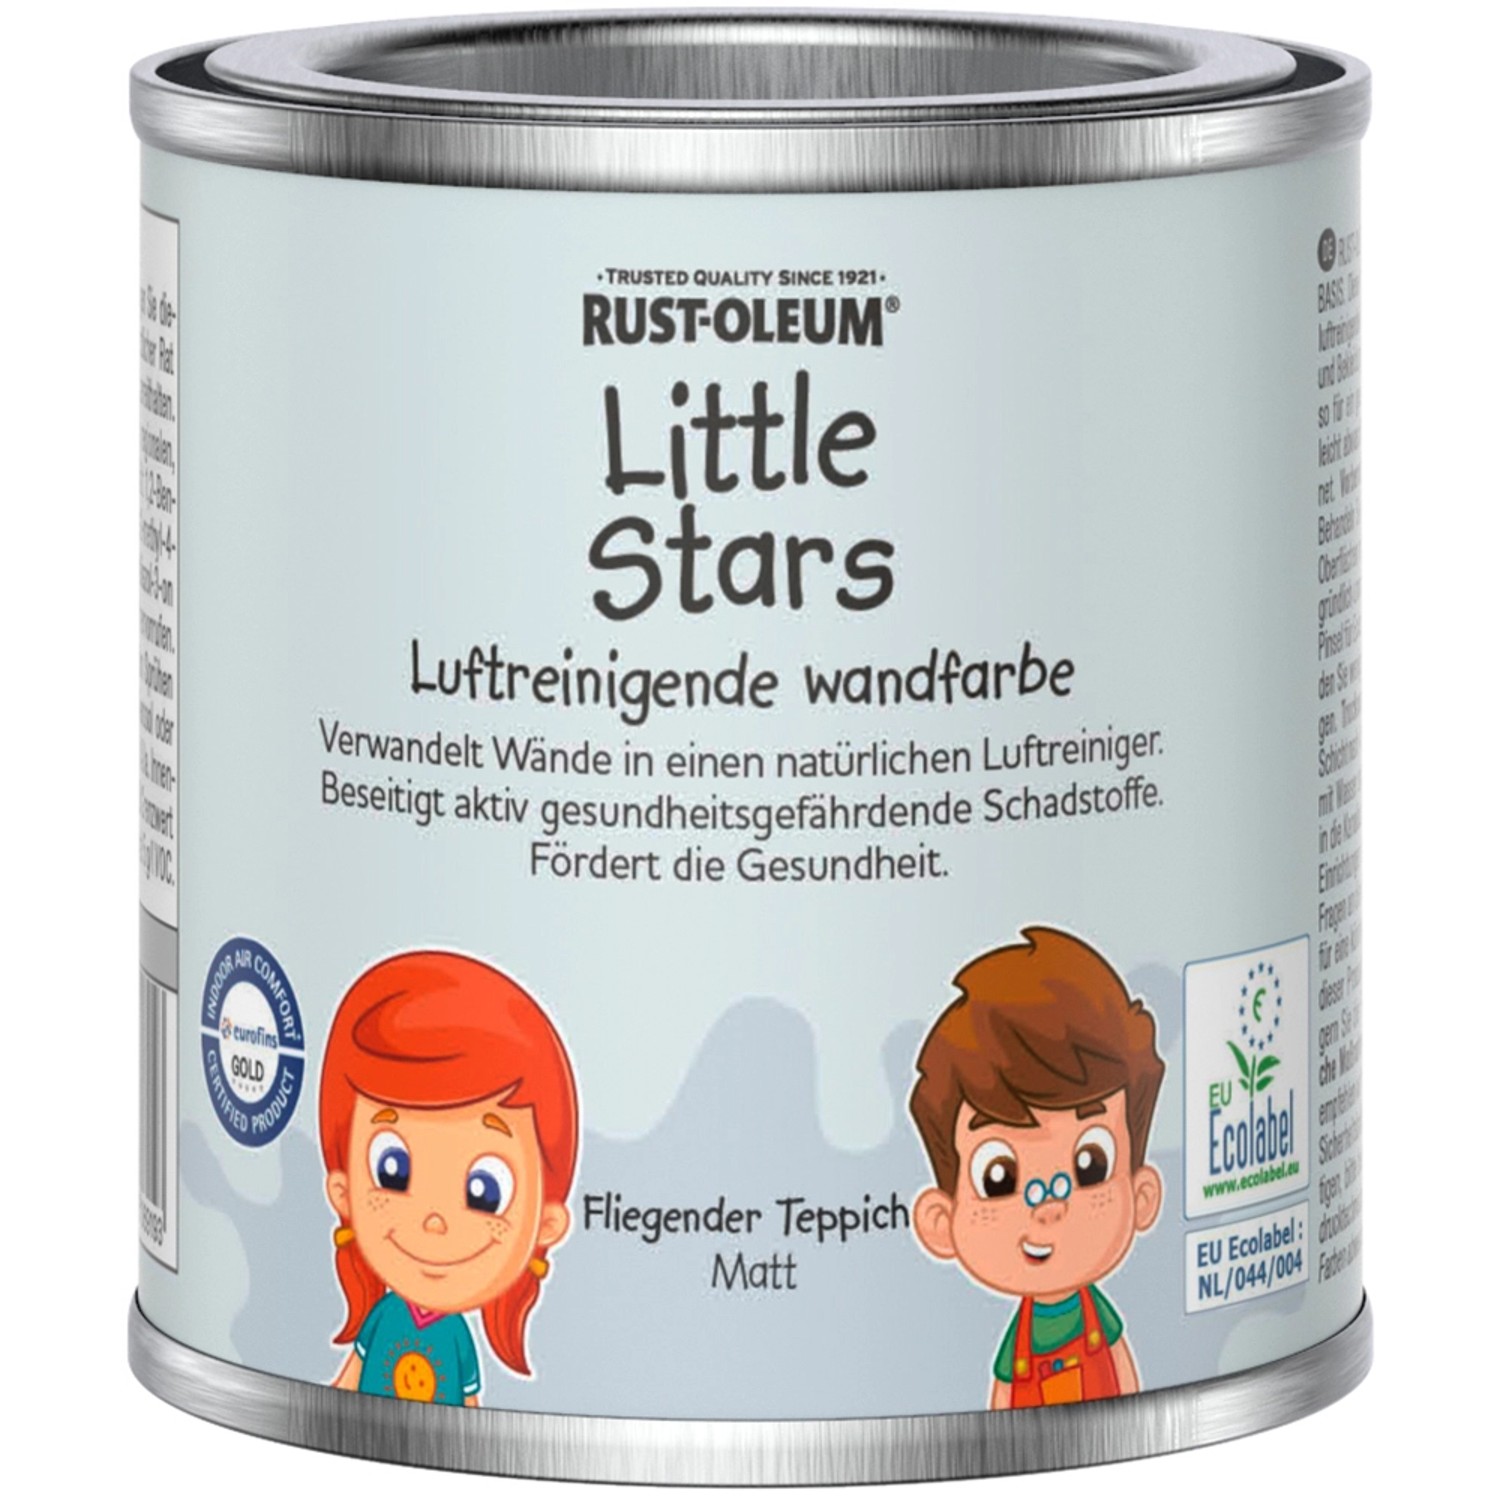 Rust-Oleum Little Stars Luftreinigende Wandfarbe Fliegender Teppich 125 ml von Rust-Oleum